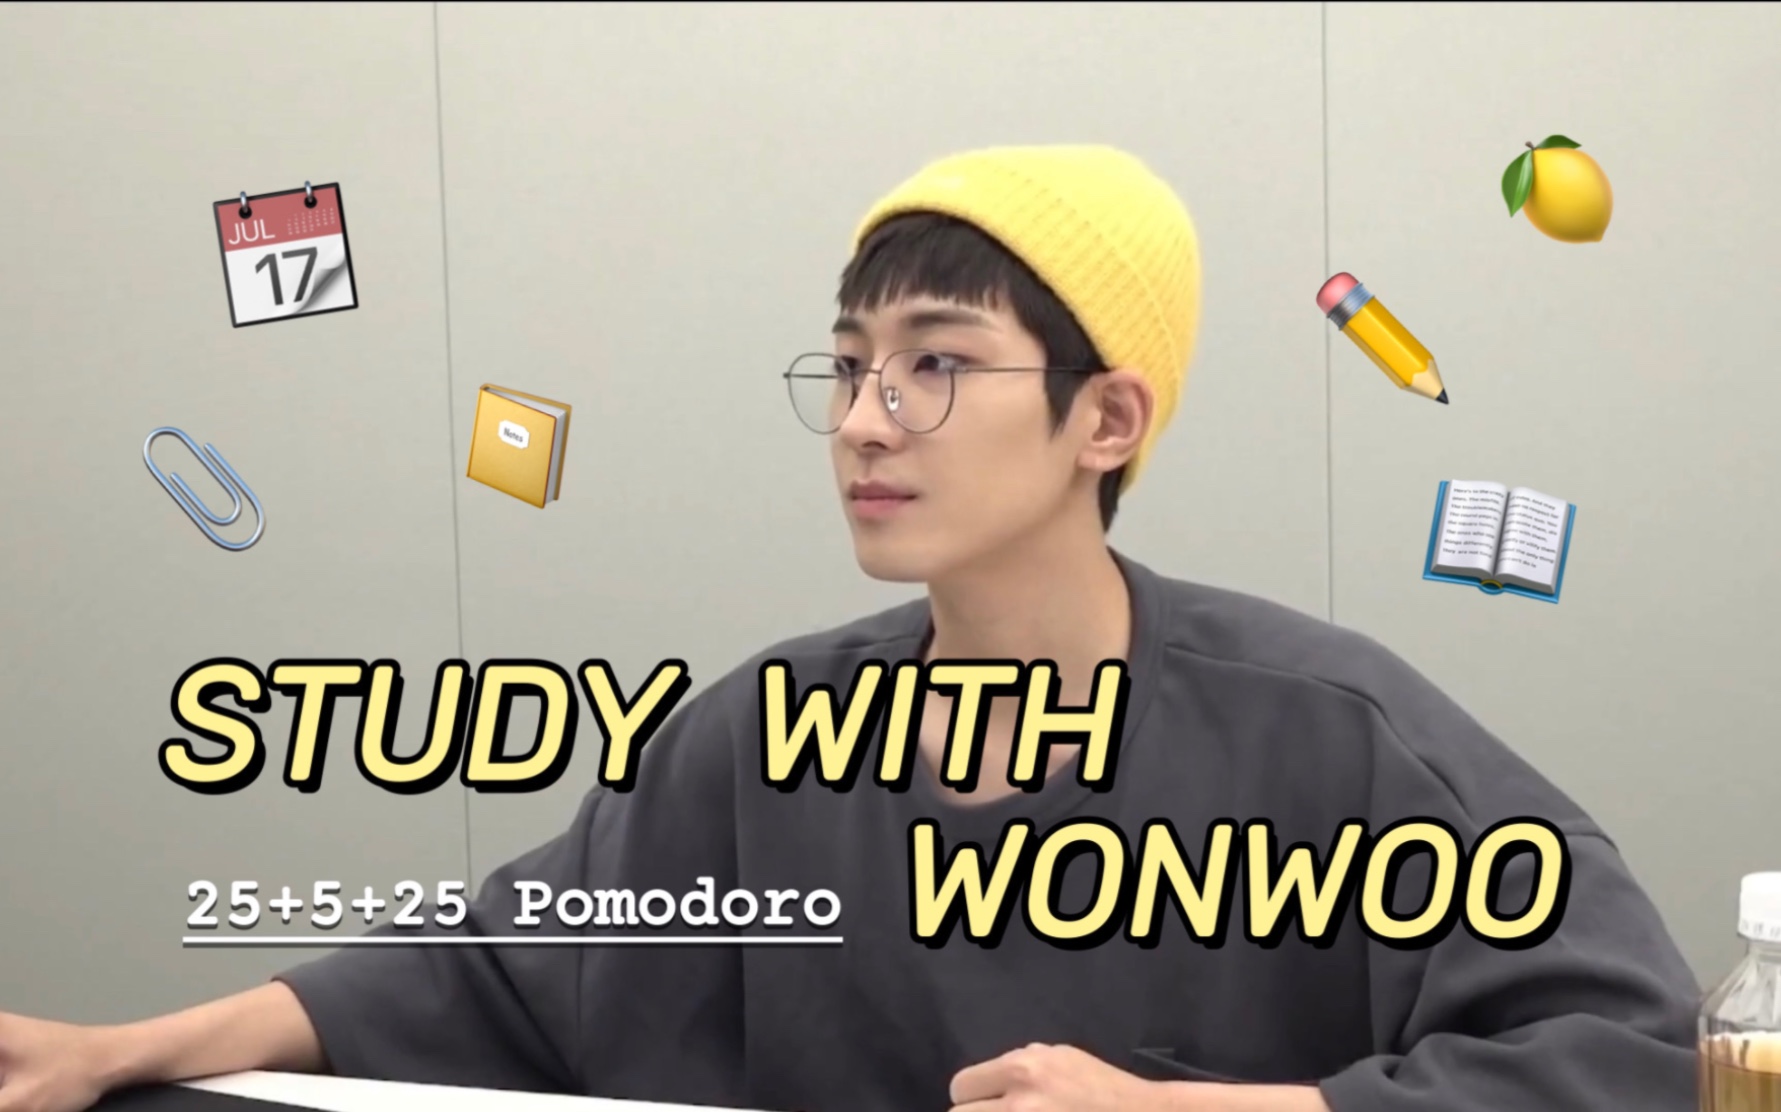 【全圆佑】Study with Wonwoo | 图书馆自习室 | 25+5+25番茄钟 | 沉浸式学习 | 翻书声 | 白噪音 | 环境音 | 陪伴学习